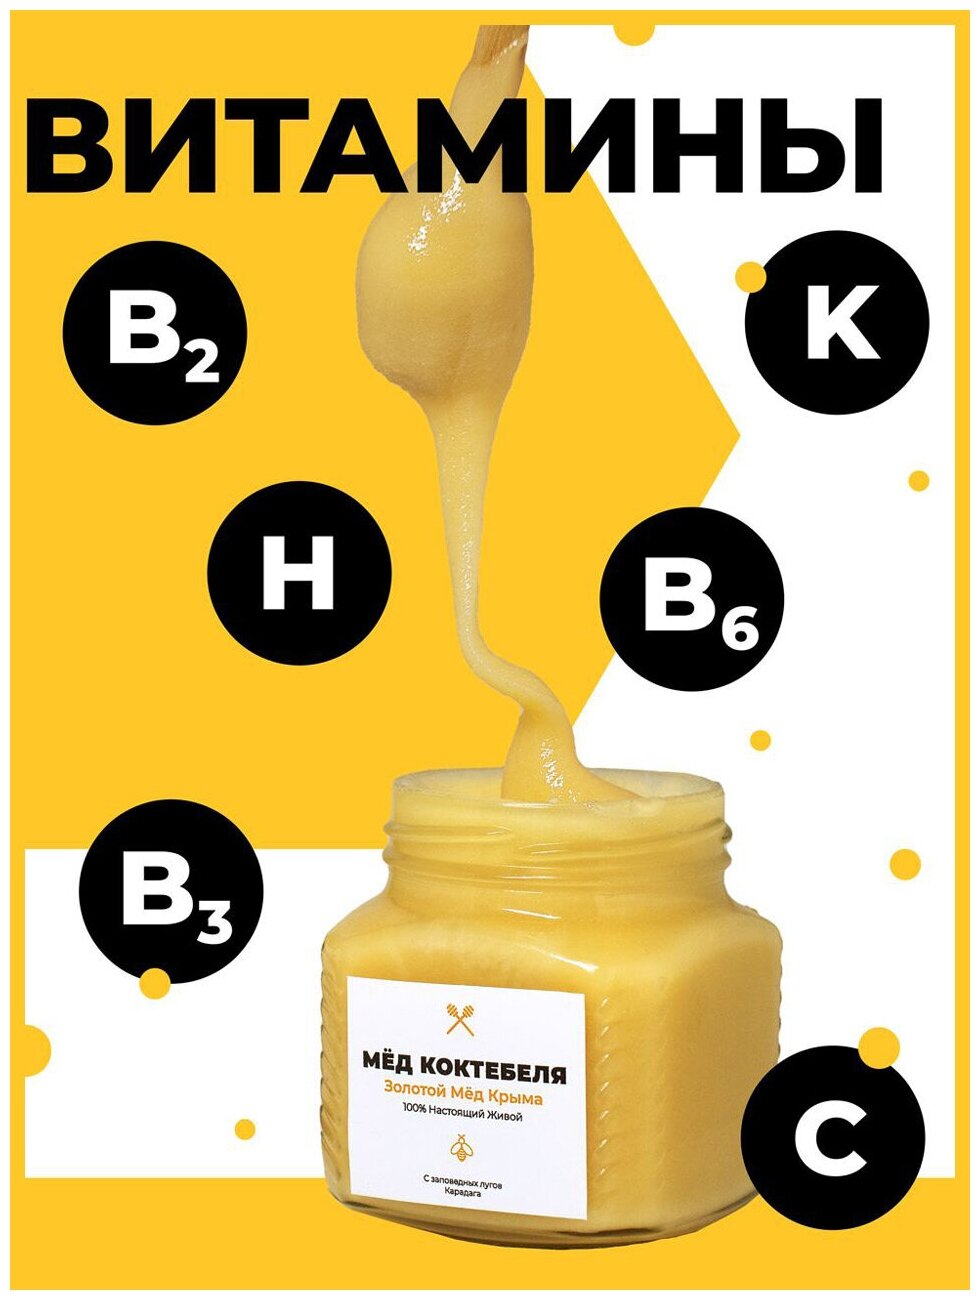 Мёд Коктебеля. Золотой мёд Крыма. Натуральный, цветочный, без сахара, без глютена, пп - фотография № 2